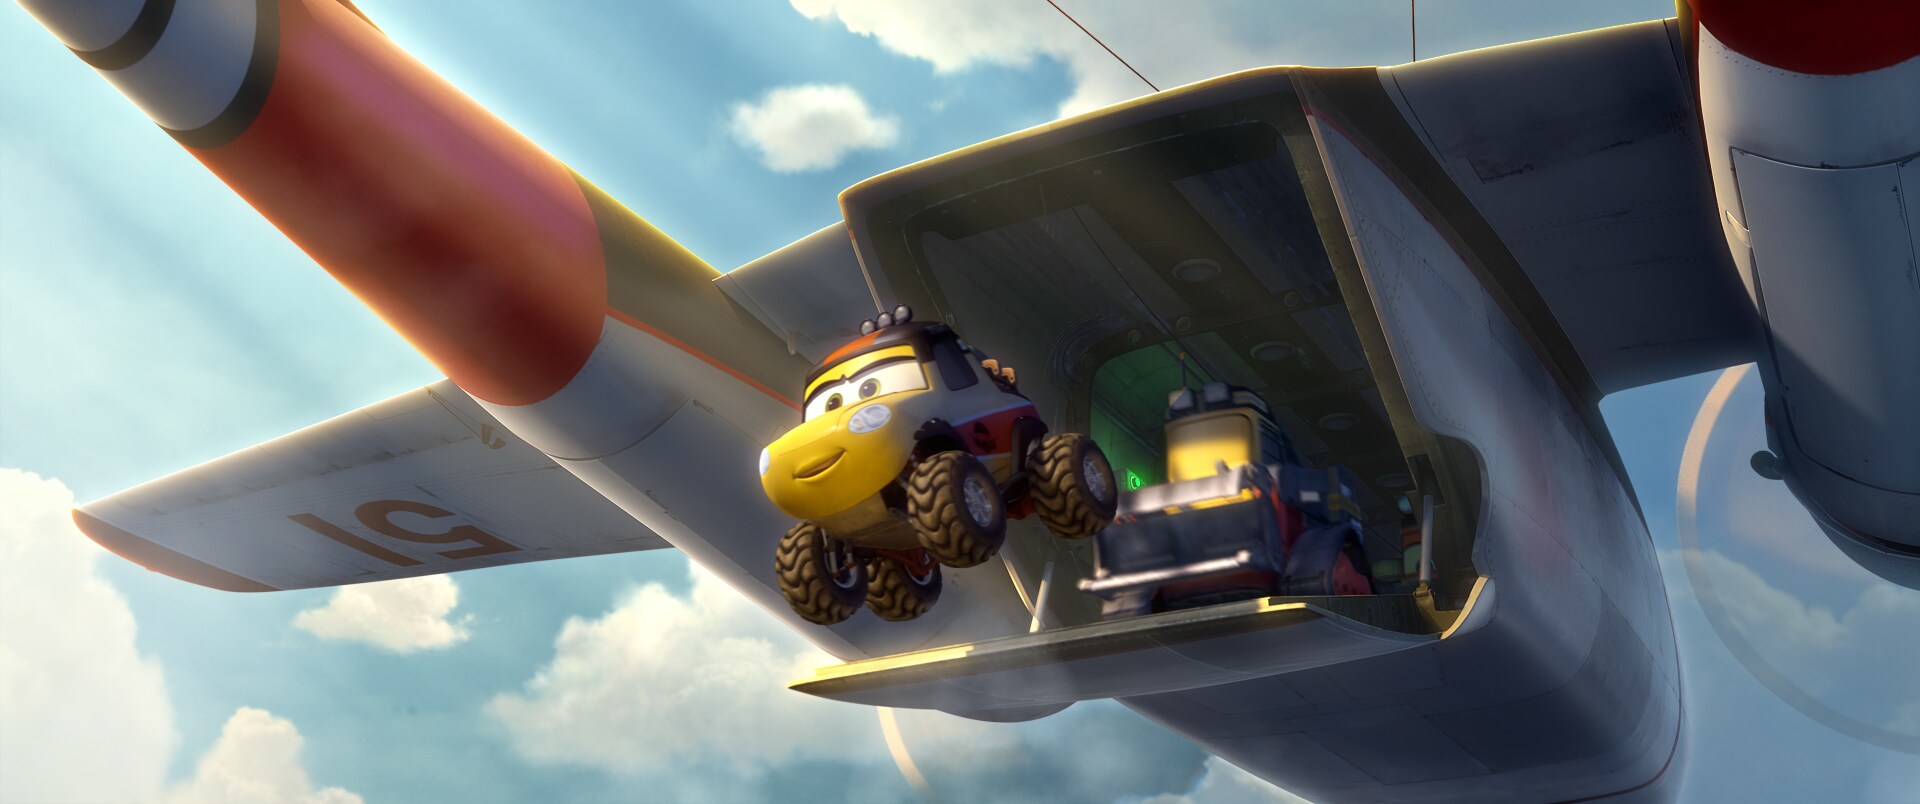 Conoce al nuevo equipo de héroes en Planes: Fire and Rescue de Disney, que aterriza en cines en 3...